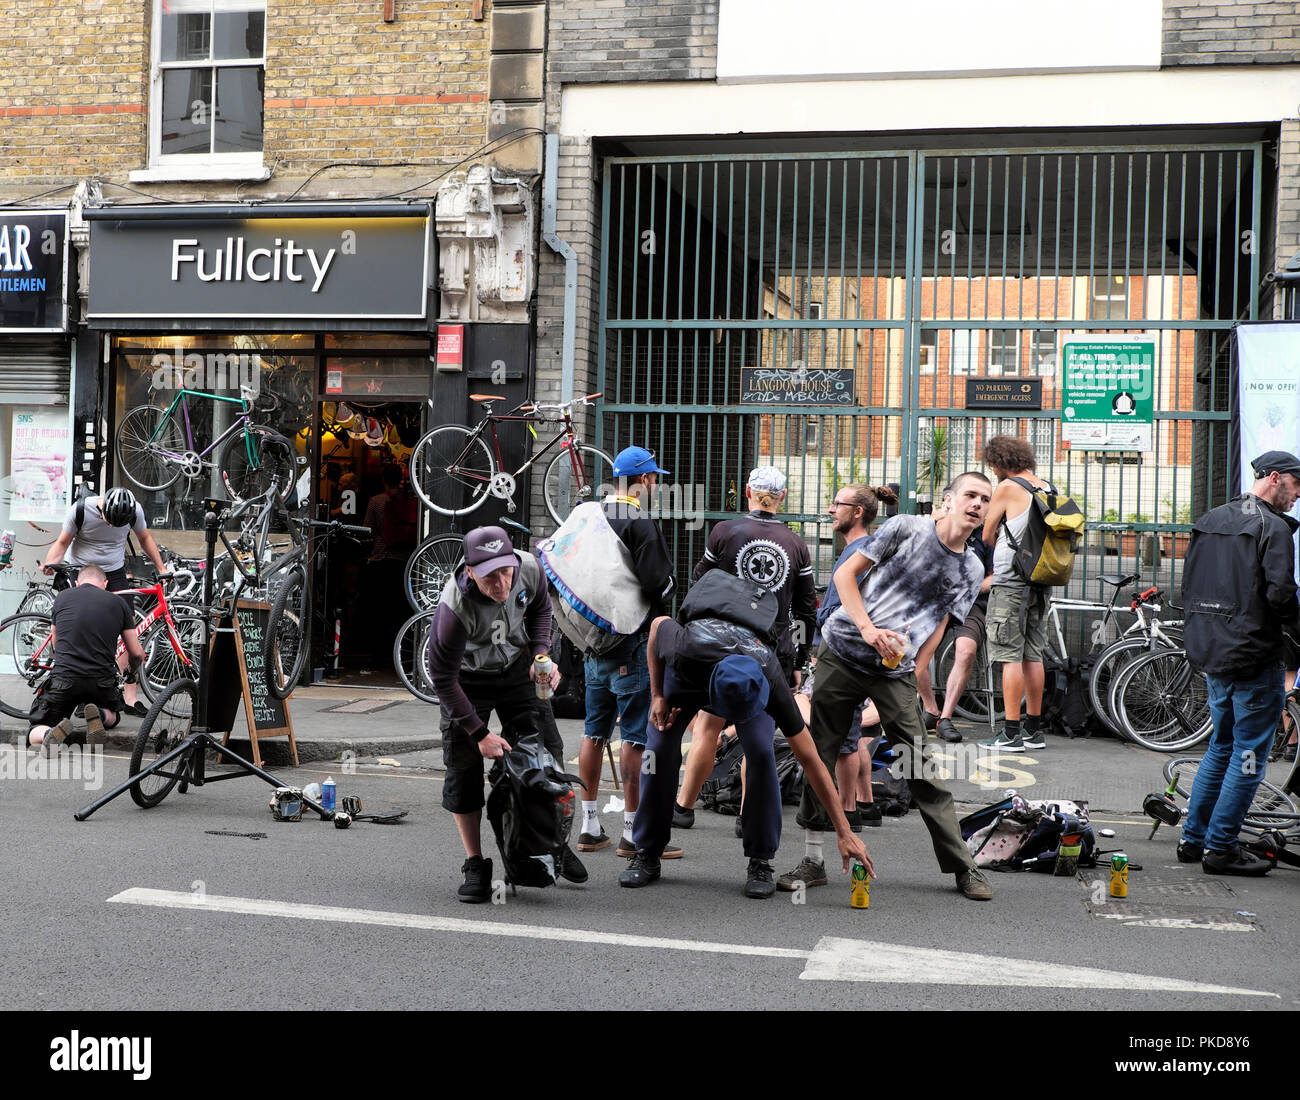 Les couriers de vélo après le travail à l'extérieur dans la rue à FULLCITY les ventes de bicyclettes cycles et de réparation de cuir à Clerkenwell Road, London EC1 KATHY DEWITT Banque D'Images